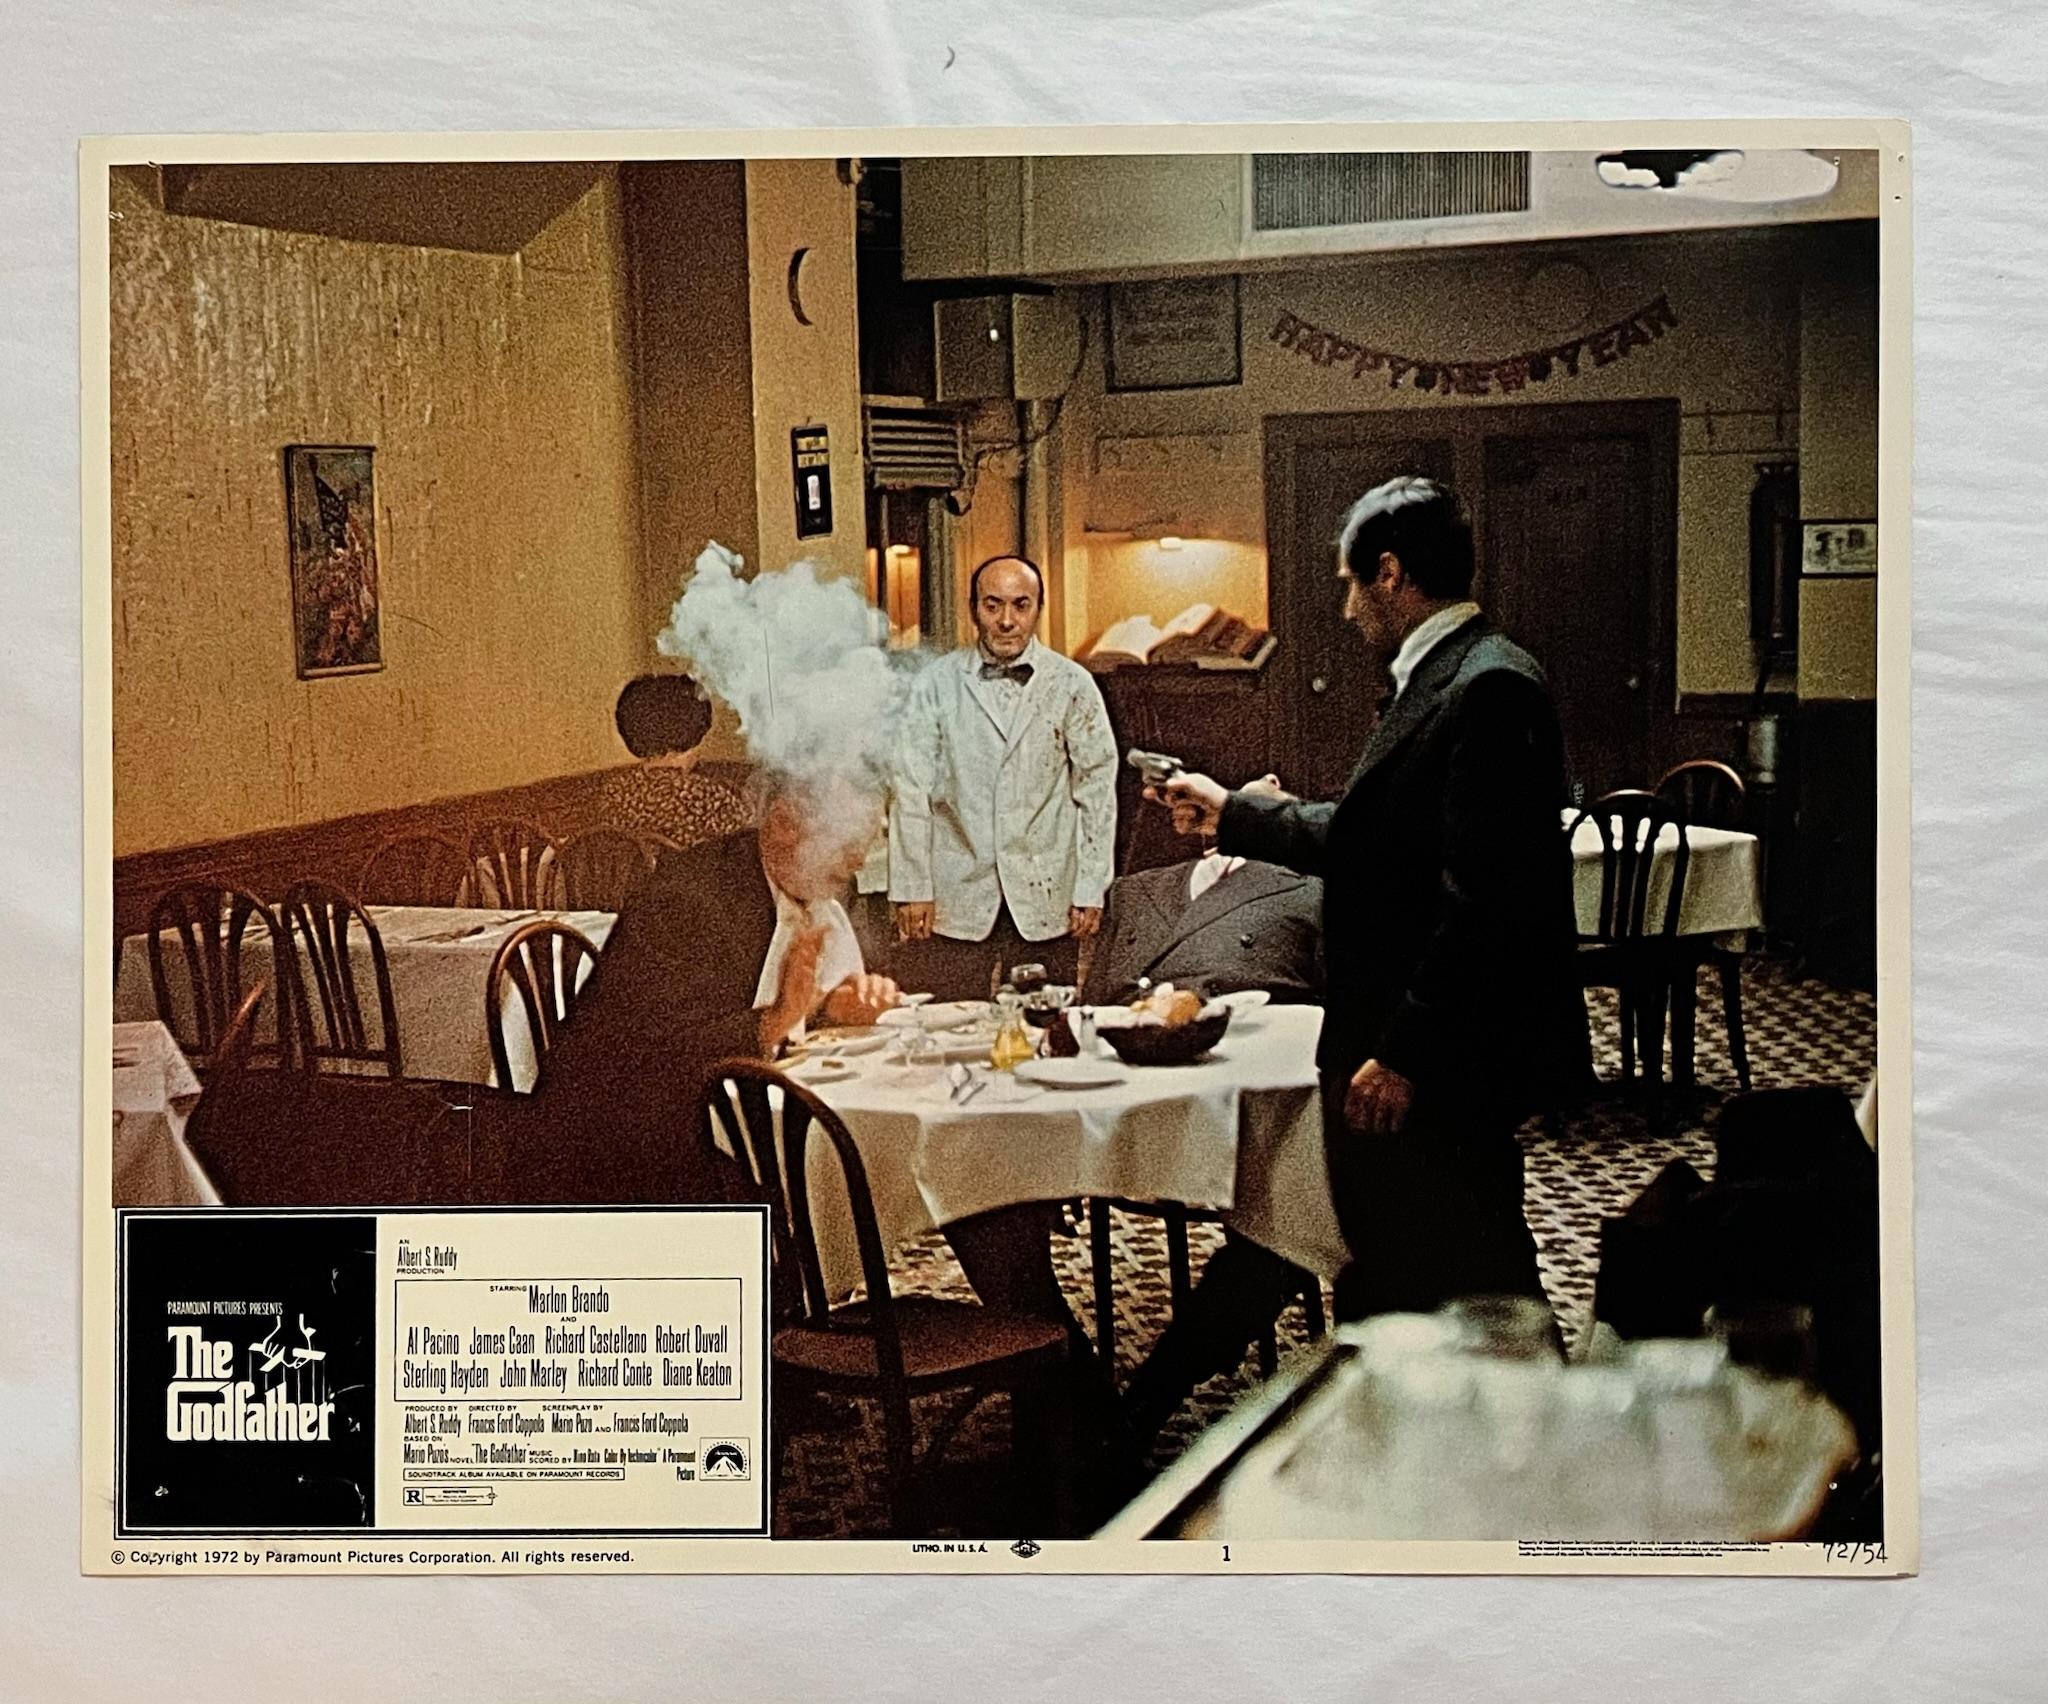 Der Pate - Original 1972 Lobby Karte #1

Vintage Godfather Lobby Card: 
Der alternde Patriarch einer organisierten Verbrecherdynastie überträgt die Kontrolle über sein geheimes Imperium an seinen widerstrebenden Sohn.

Regisseur: Francis Ford